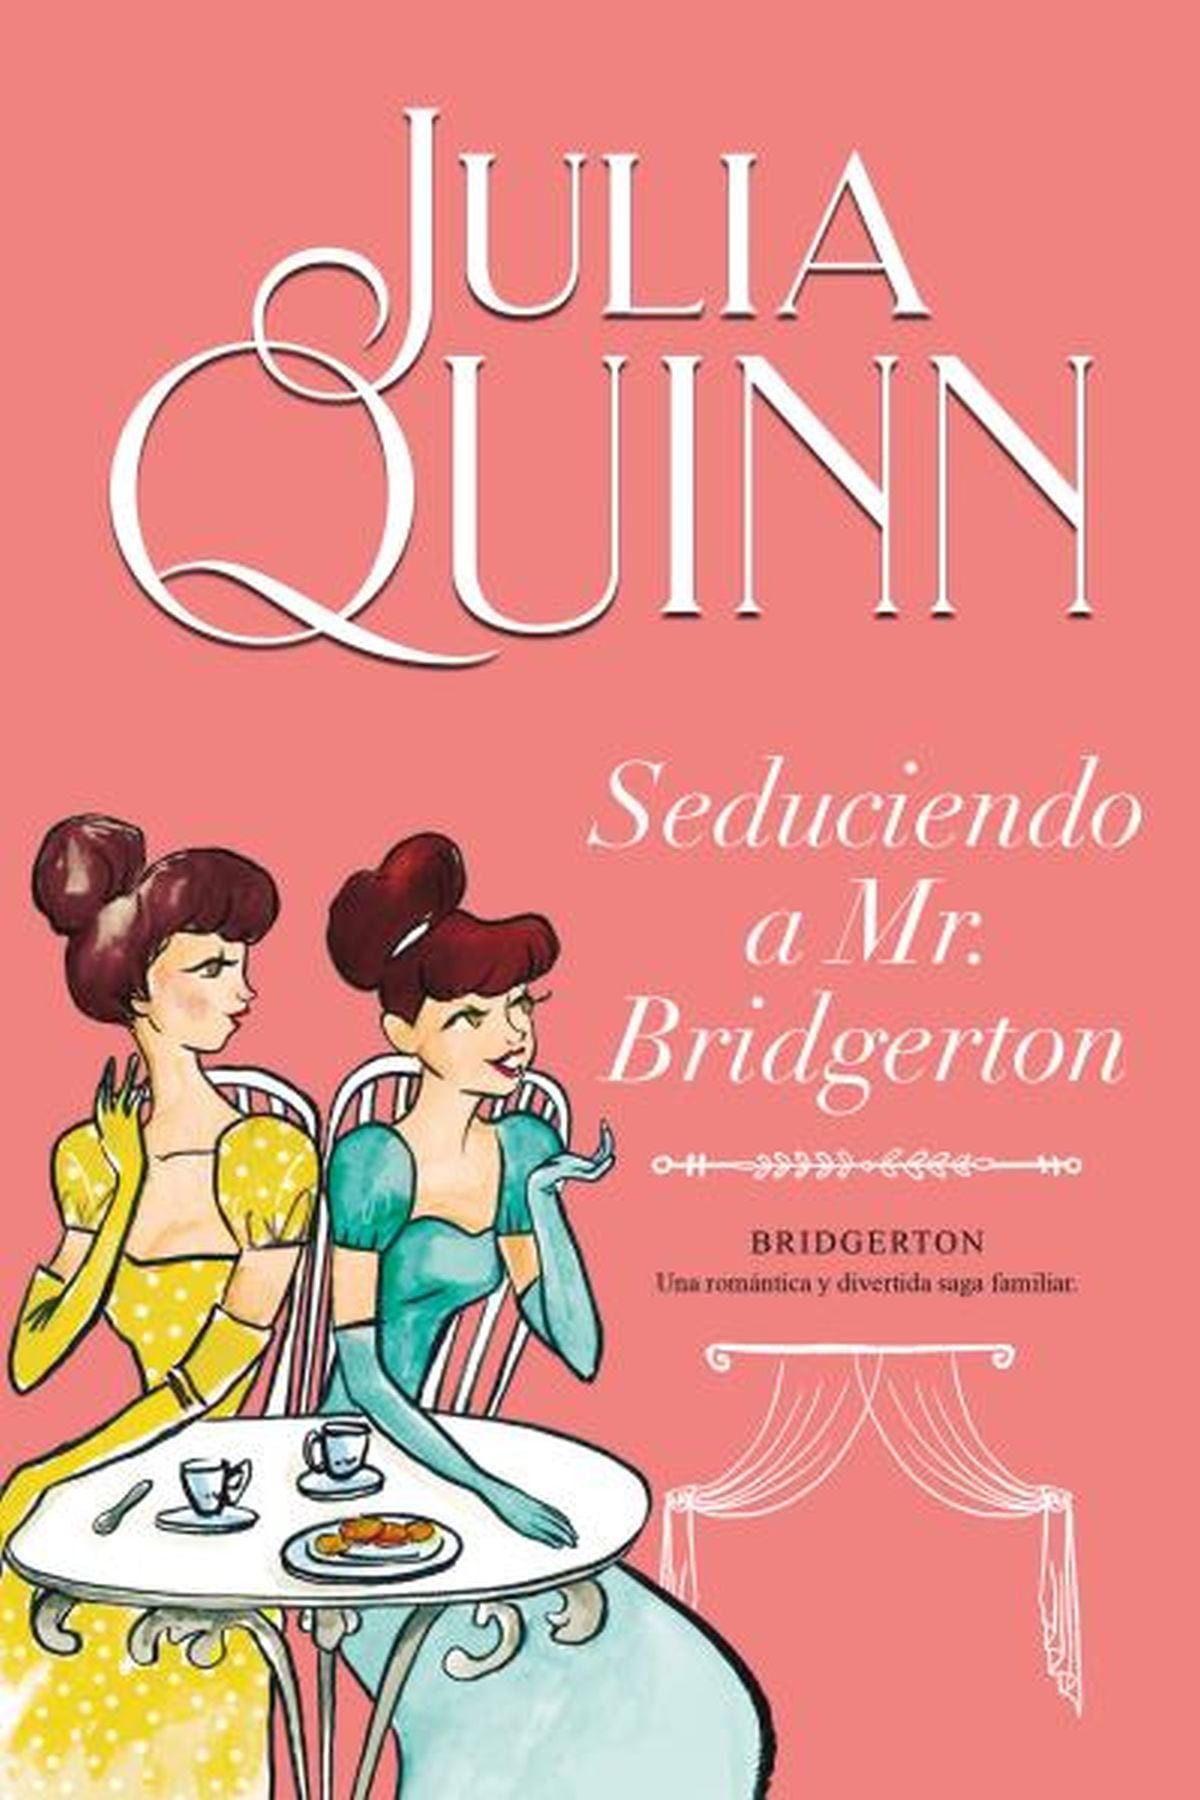 La colección de “Bridgerton” de Julia Quinn cuenta con más de 11 ejemplares de la saga, entre historias principales y spin-offs, pero es la obra “Seduciendo a Mr. Bridgerton” donde se descubre por primera vez la identidad de Penelope Featherington como Lady Whistledown.